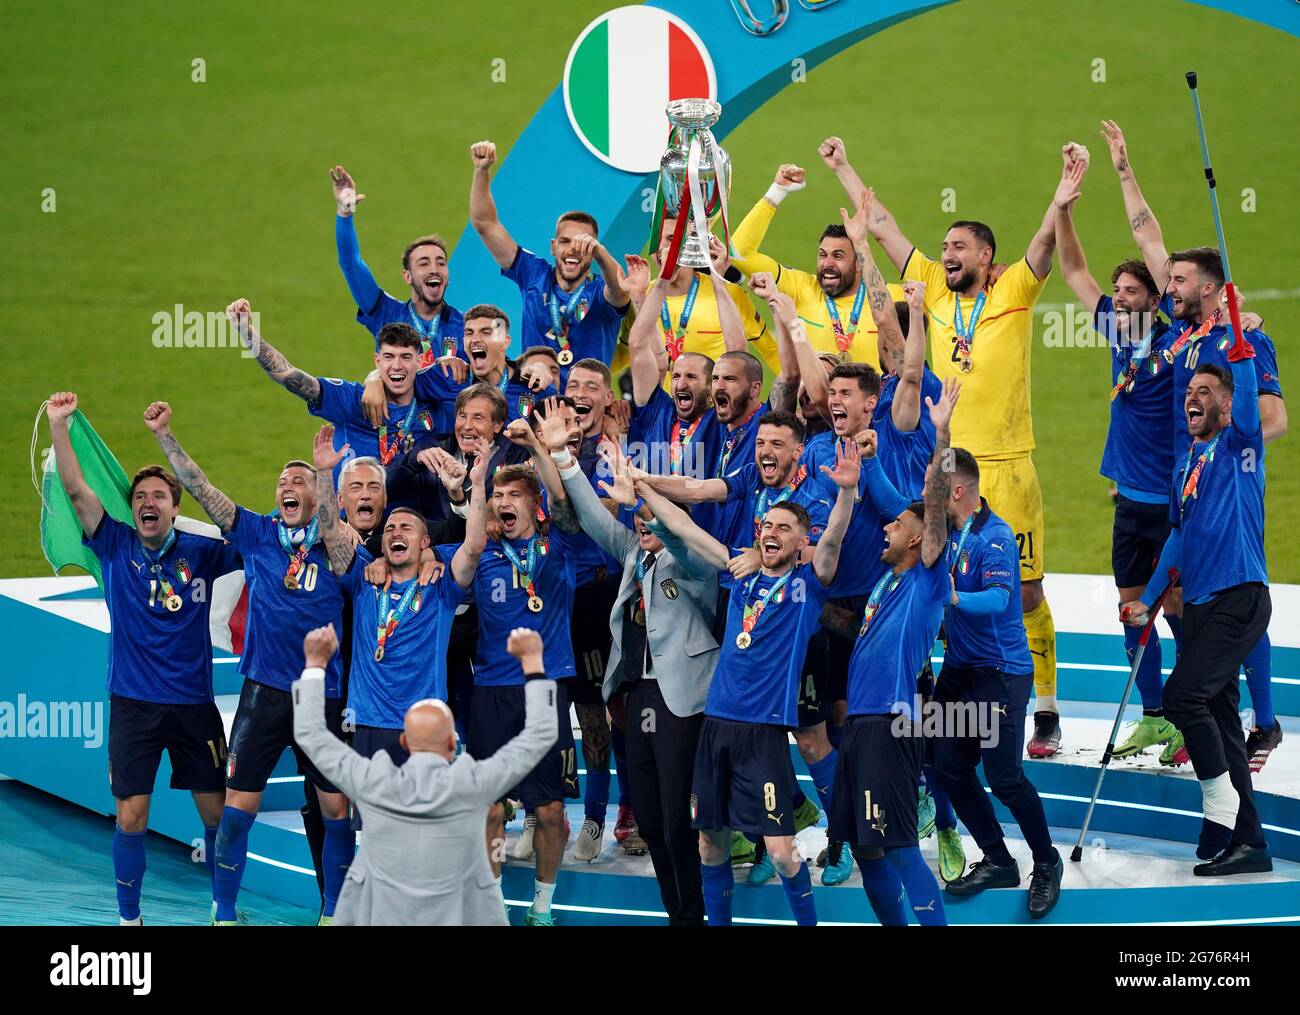 Il Capitano d'Italia Giorgio Chiellini solleva il Trofeo UEFA Euro 2020 dopo la vittoria dei suoi schieramenti sull'Inghilterra nella finale UEFA Euro2020 allo stadio Wembley di Londra. Data immagine: Domenica 11 luglio 2021. Foto Stock